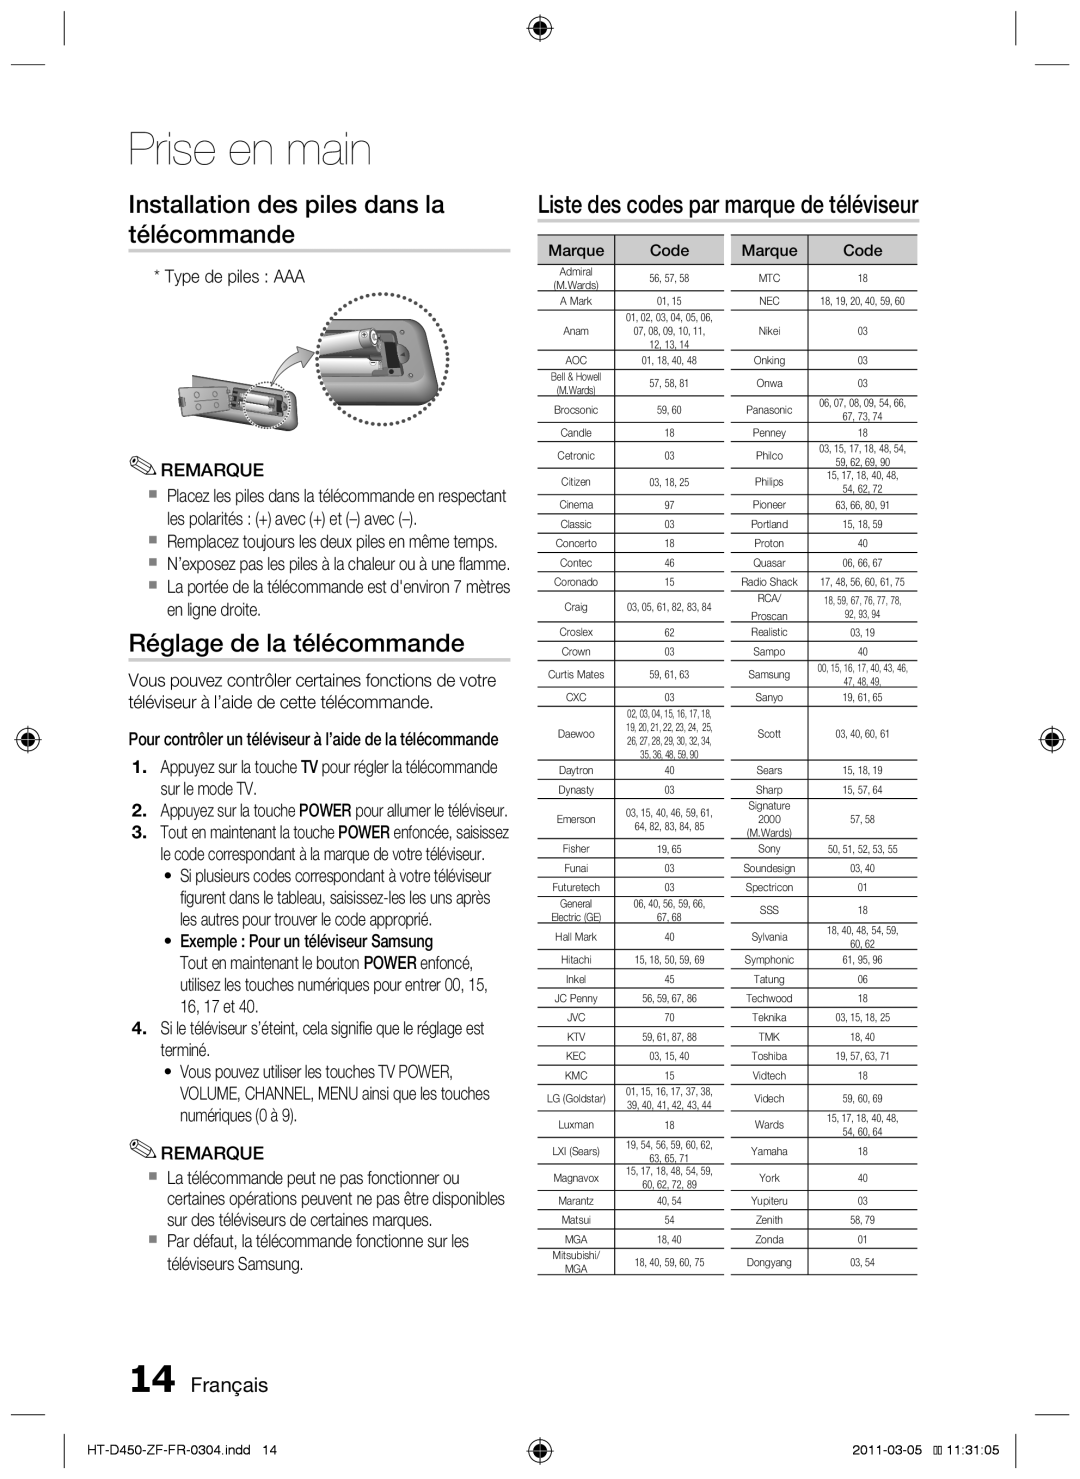 Samsung HT-D453, HT-D450 Installation des piles dans la télécommande, Liste des codes par marque de téléviseur, Français 